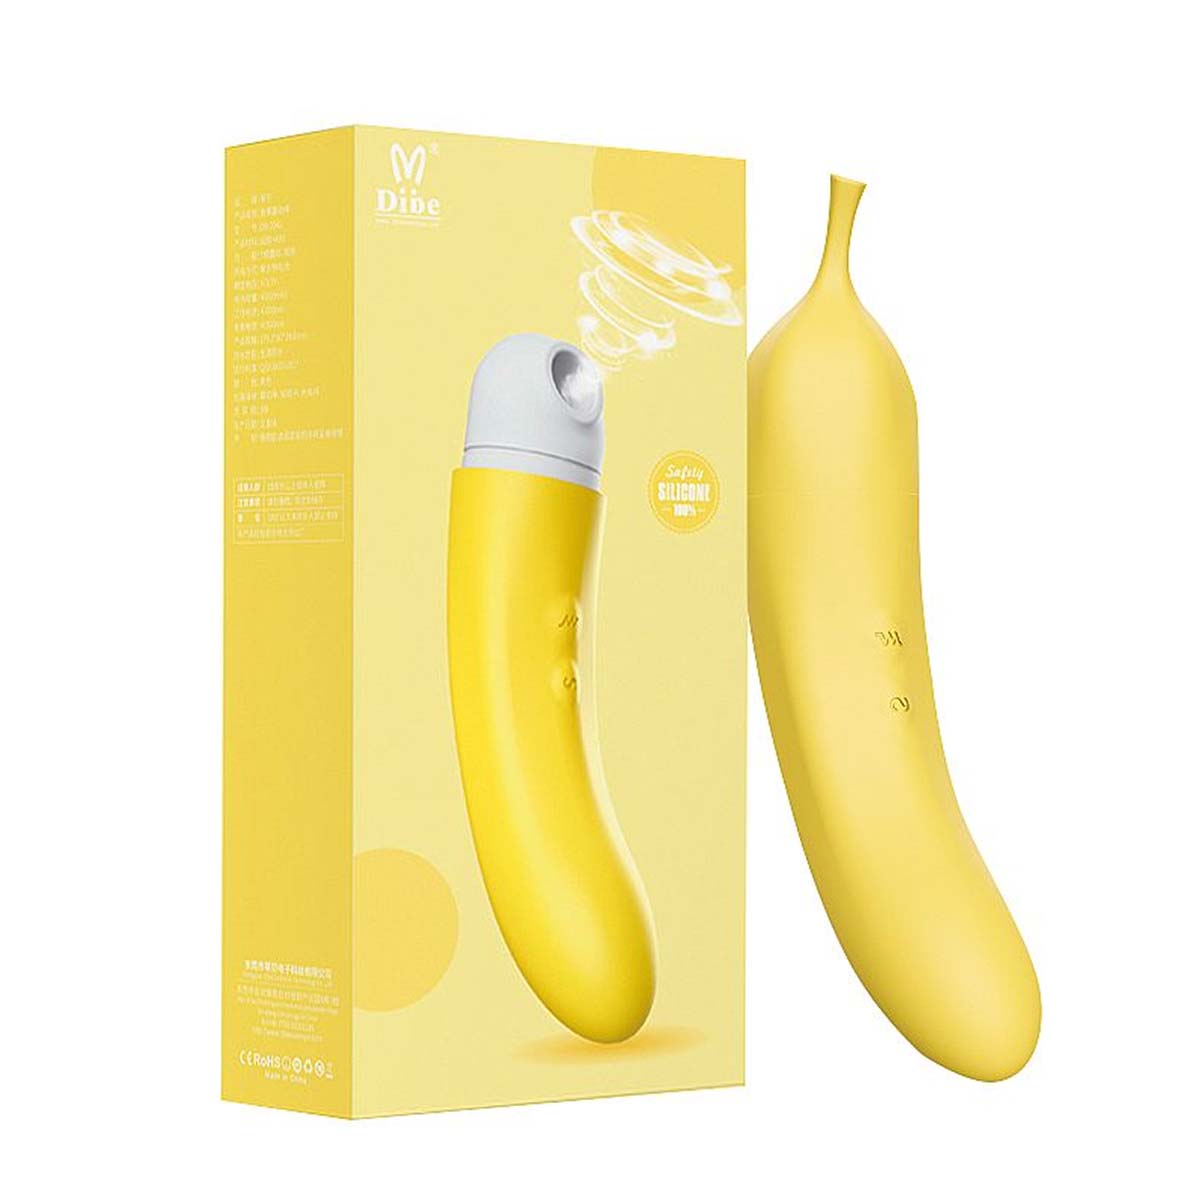 Dibe Abby Vibrador Banana Ponto G com Função de Pulsação e 7 Modos de Vibração Sexy Import